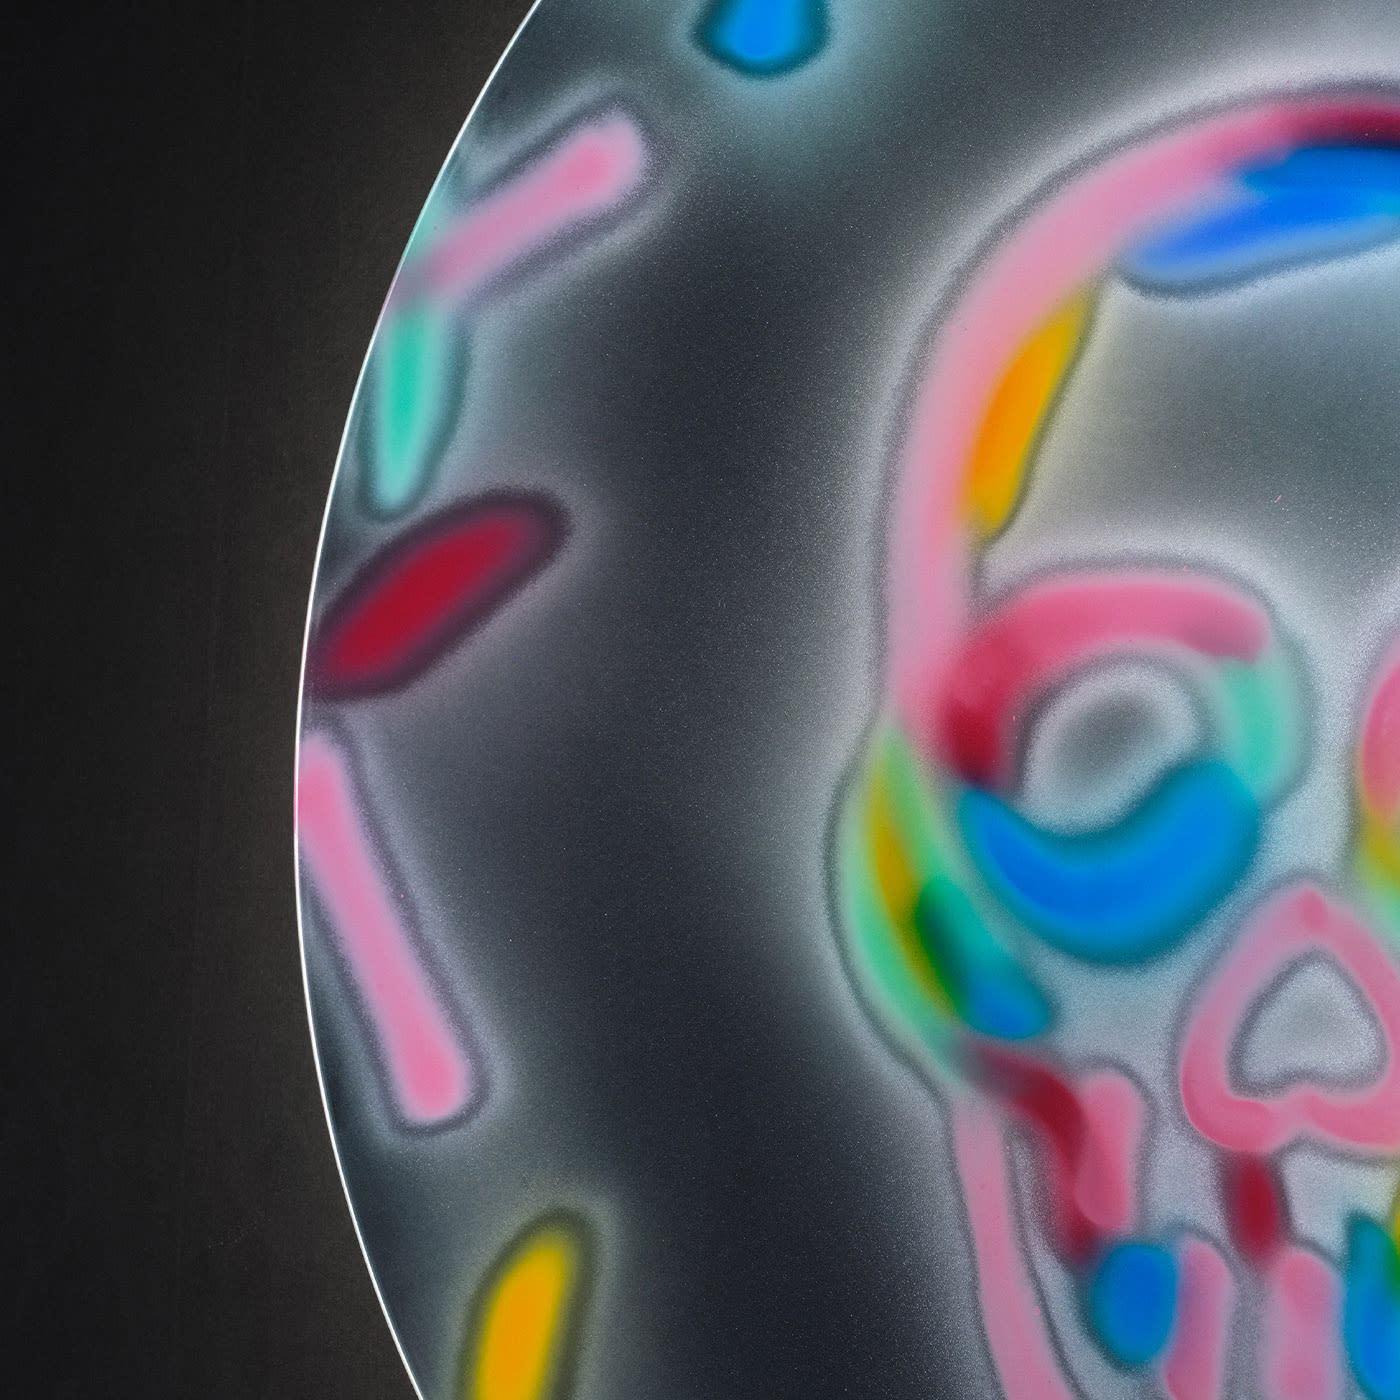 Fun Skull of Colors Mirror #2 by Bradley Theodore - Covi e Puccioni